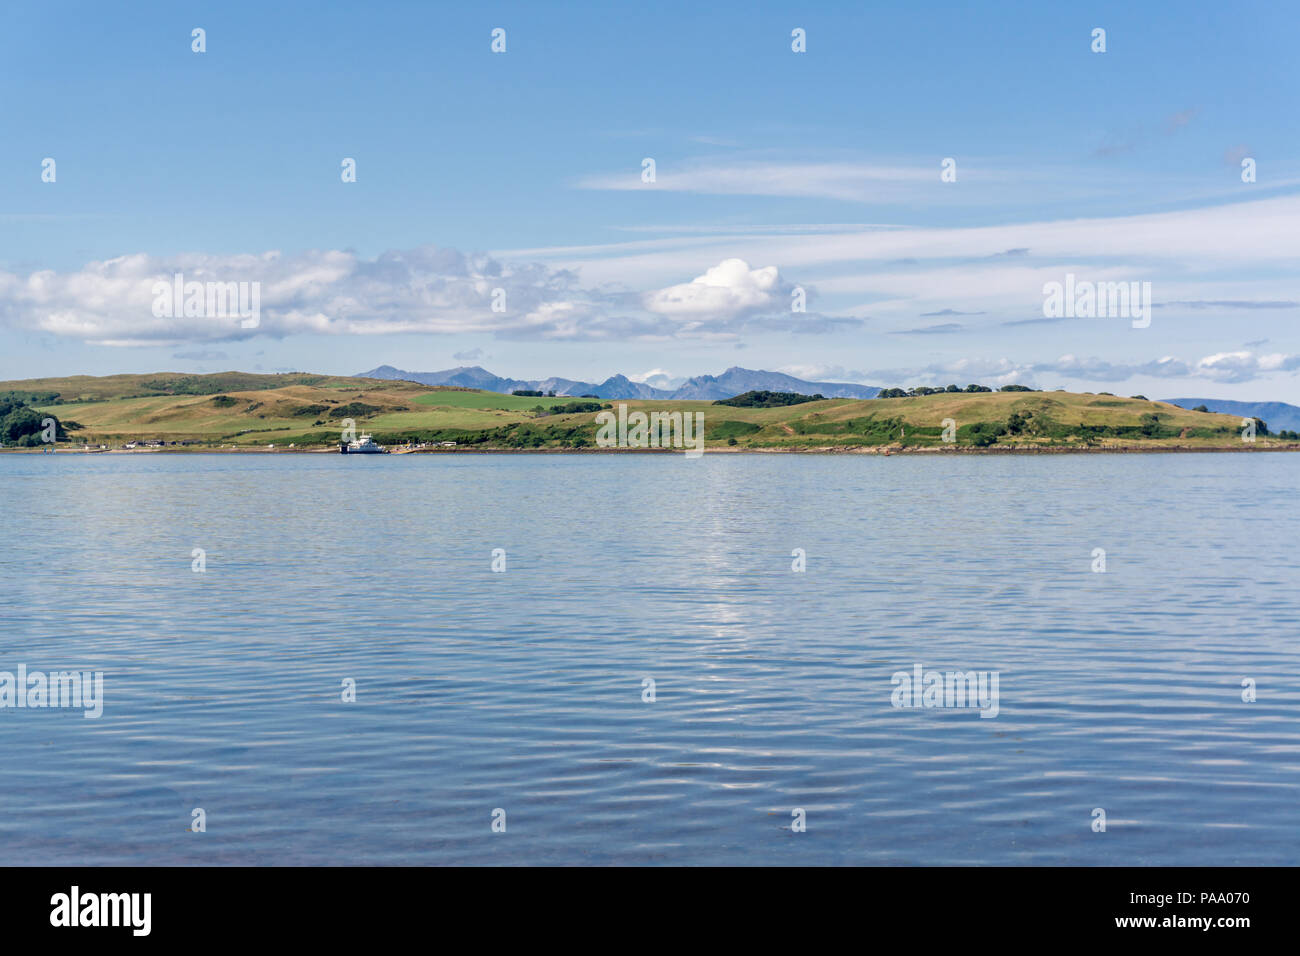 Bild der Insel Cumbrae gegenüber Largs an der Westküste von Schottland, die durch die zwei kleinen Fähren zur und von der Insel serviert wird. Maje Stockfoto